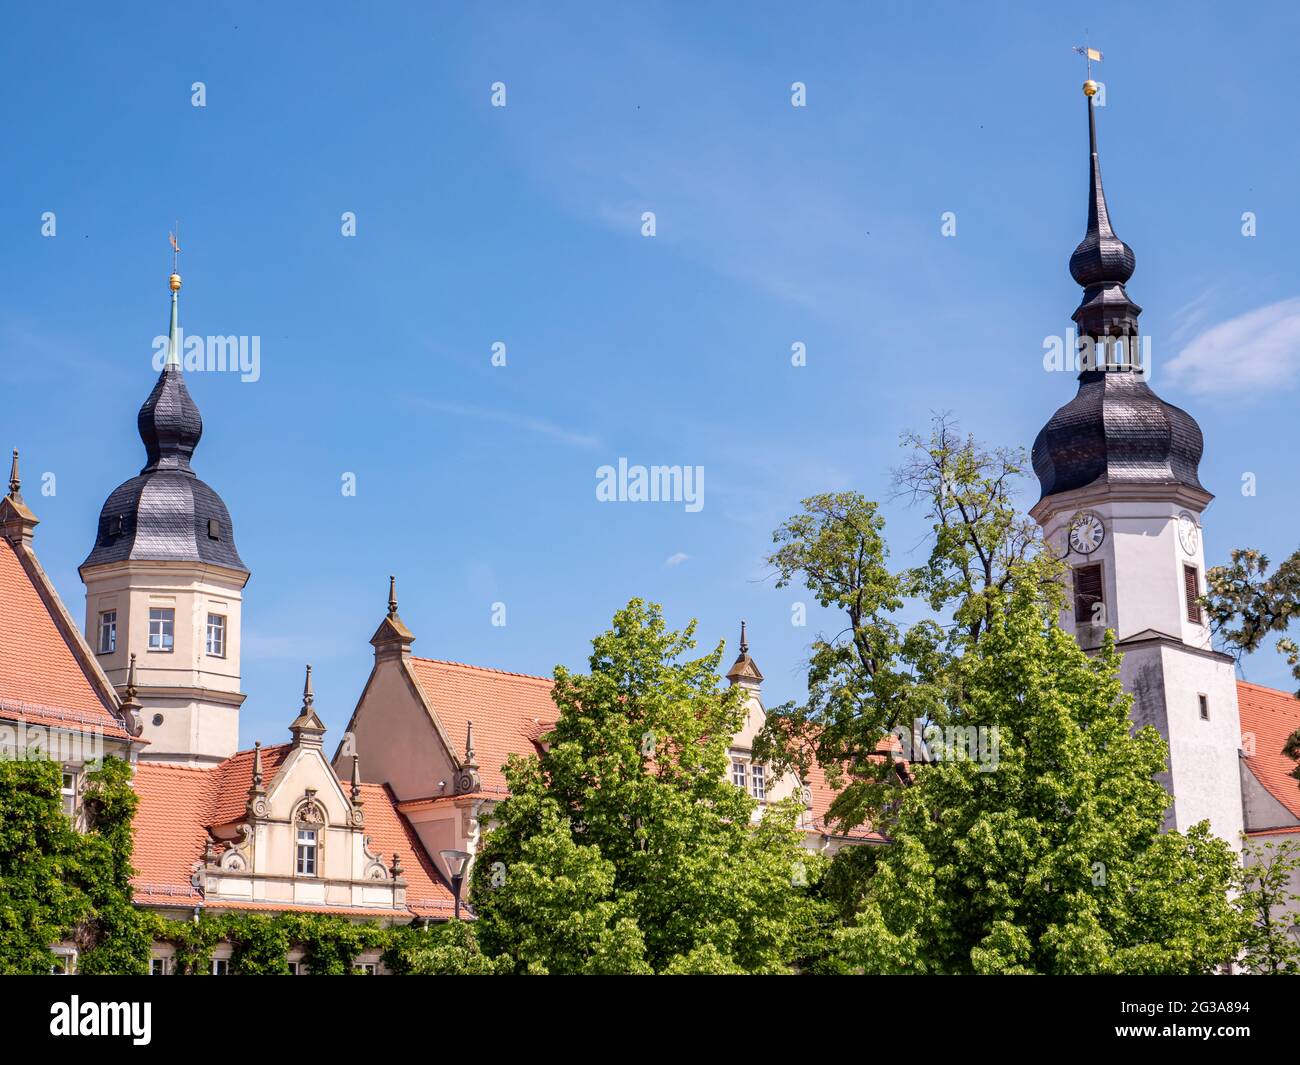 Skyline of Riesa in Saxony Stock Photo